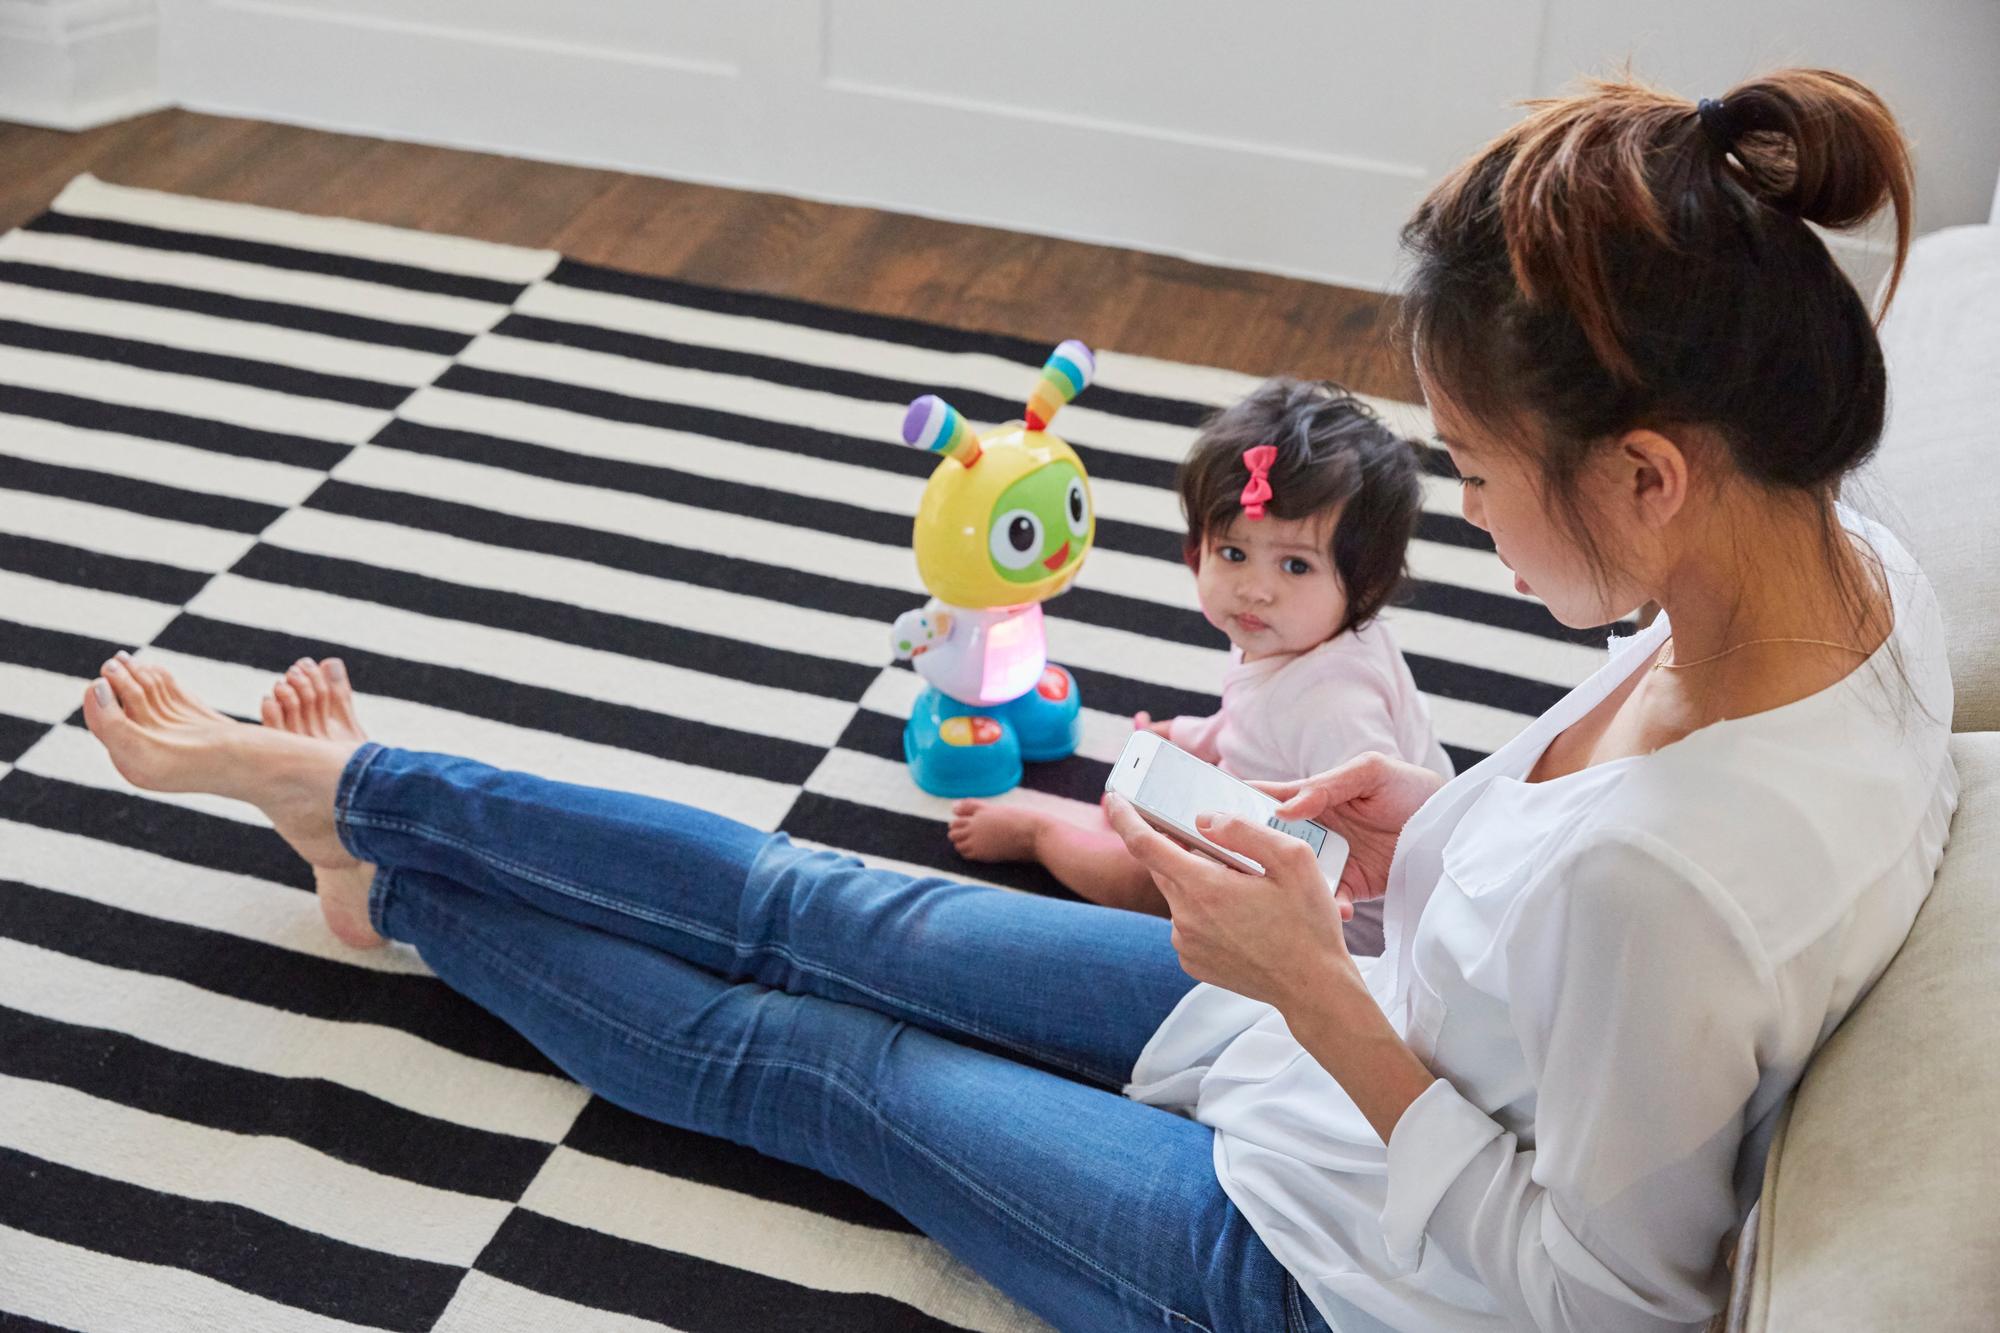 Selon le rapport, la relation parent-enfant peut être perturbée par l'utilisation des smartphones. [Cultura Creative via AFP - EMMA KIM]